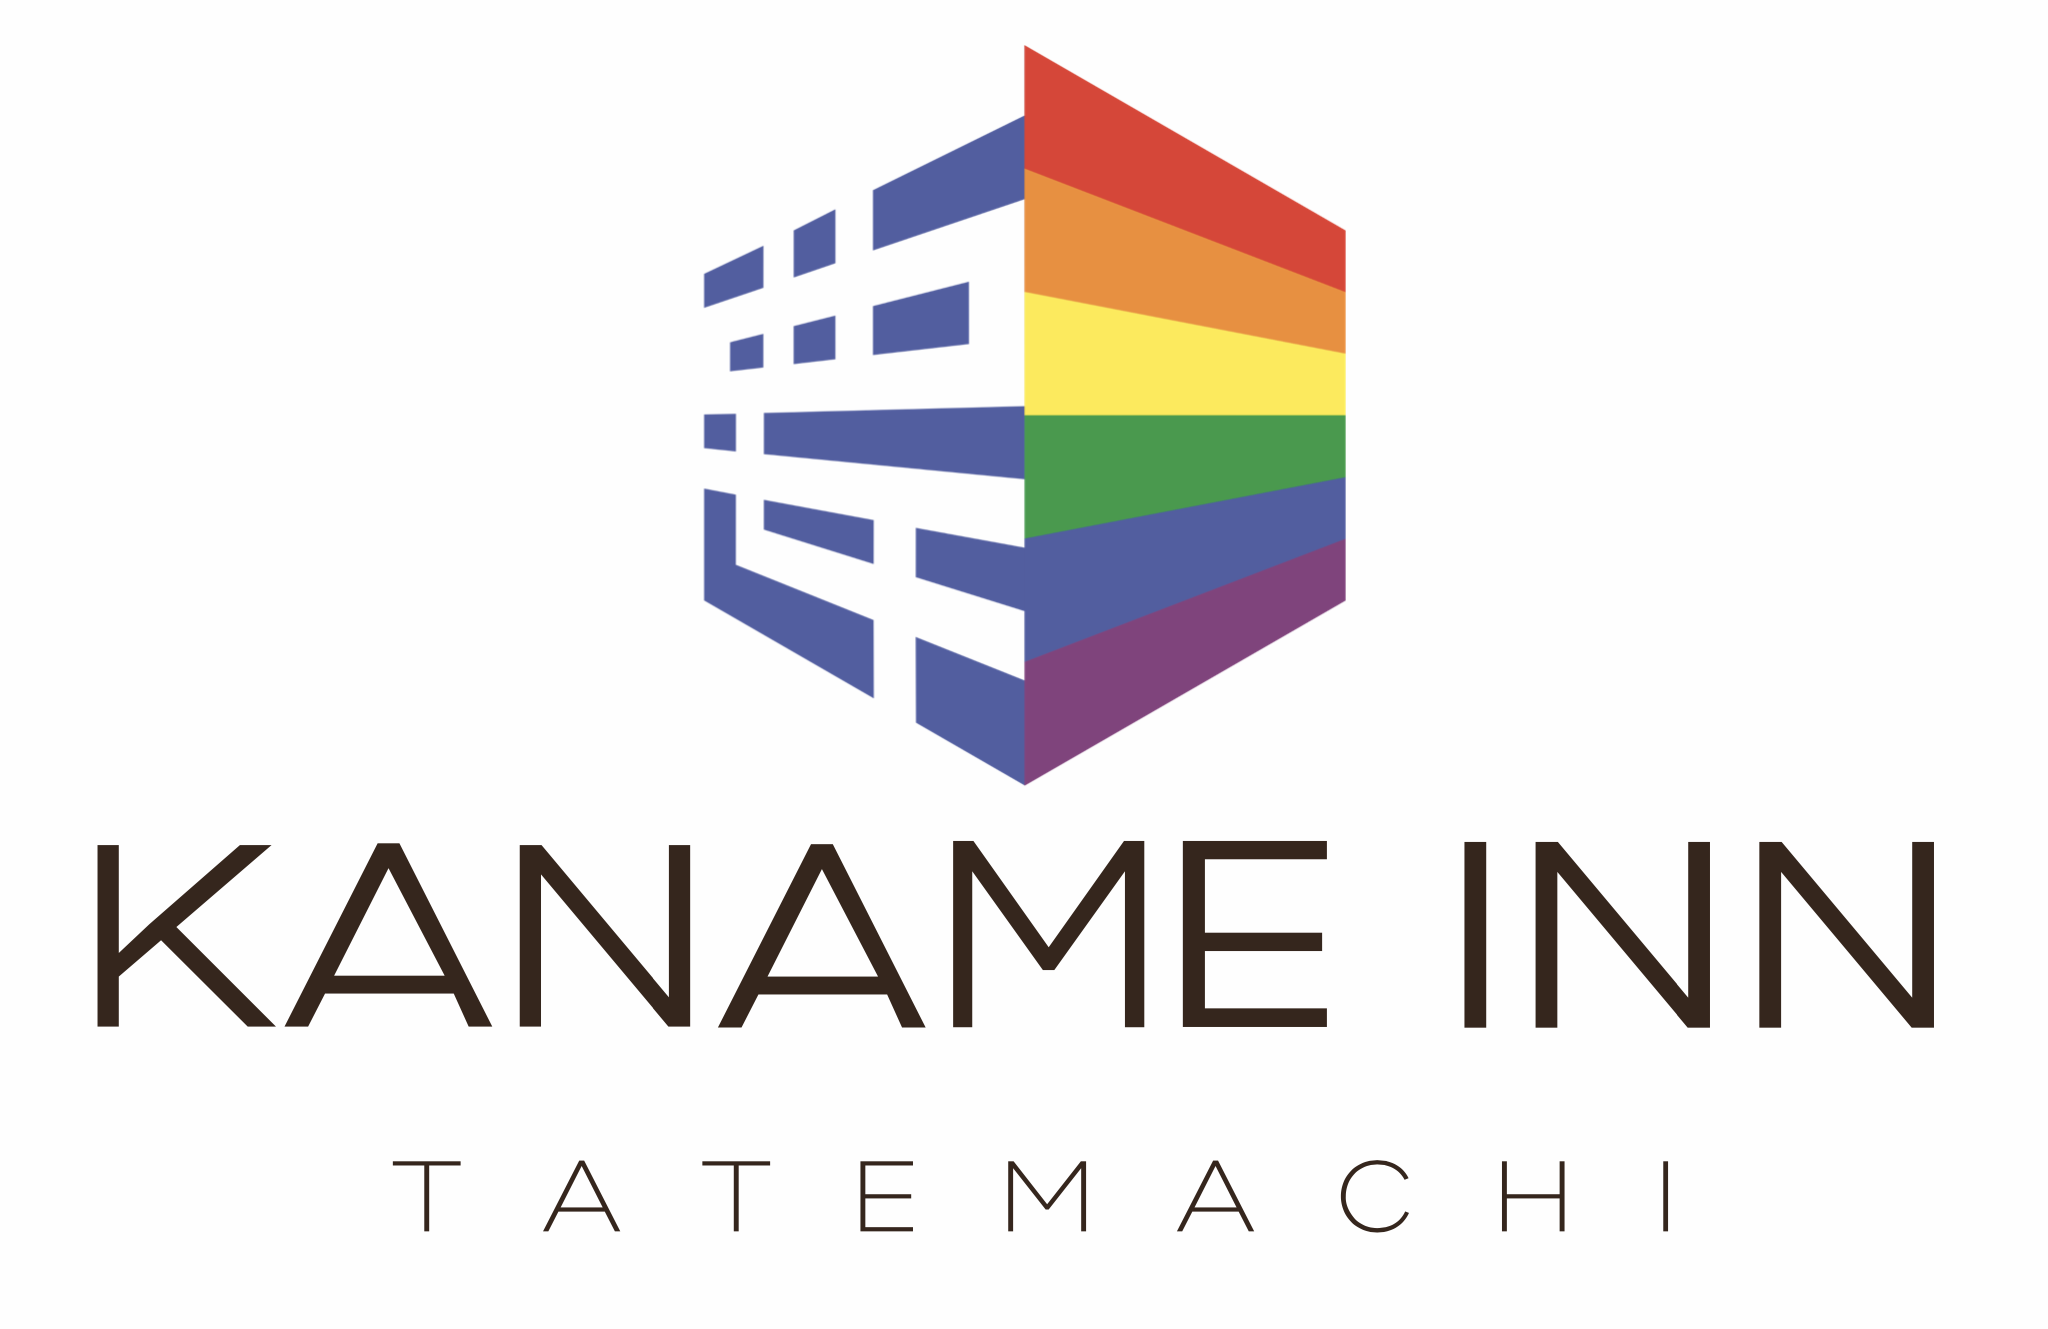 Kaname Inn Tatemachi with a partial rainbow logo